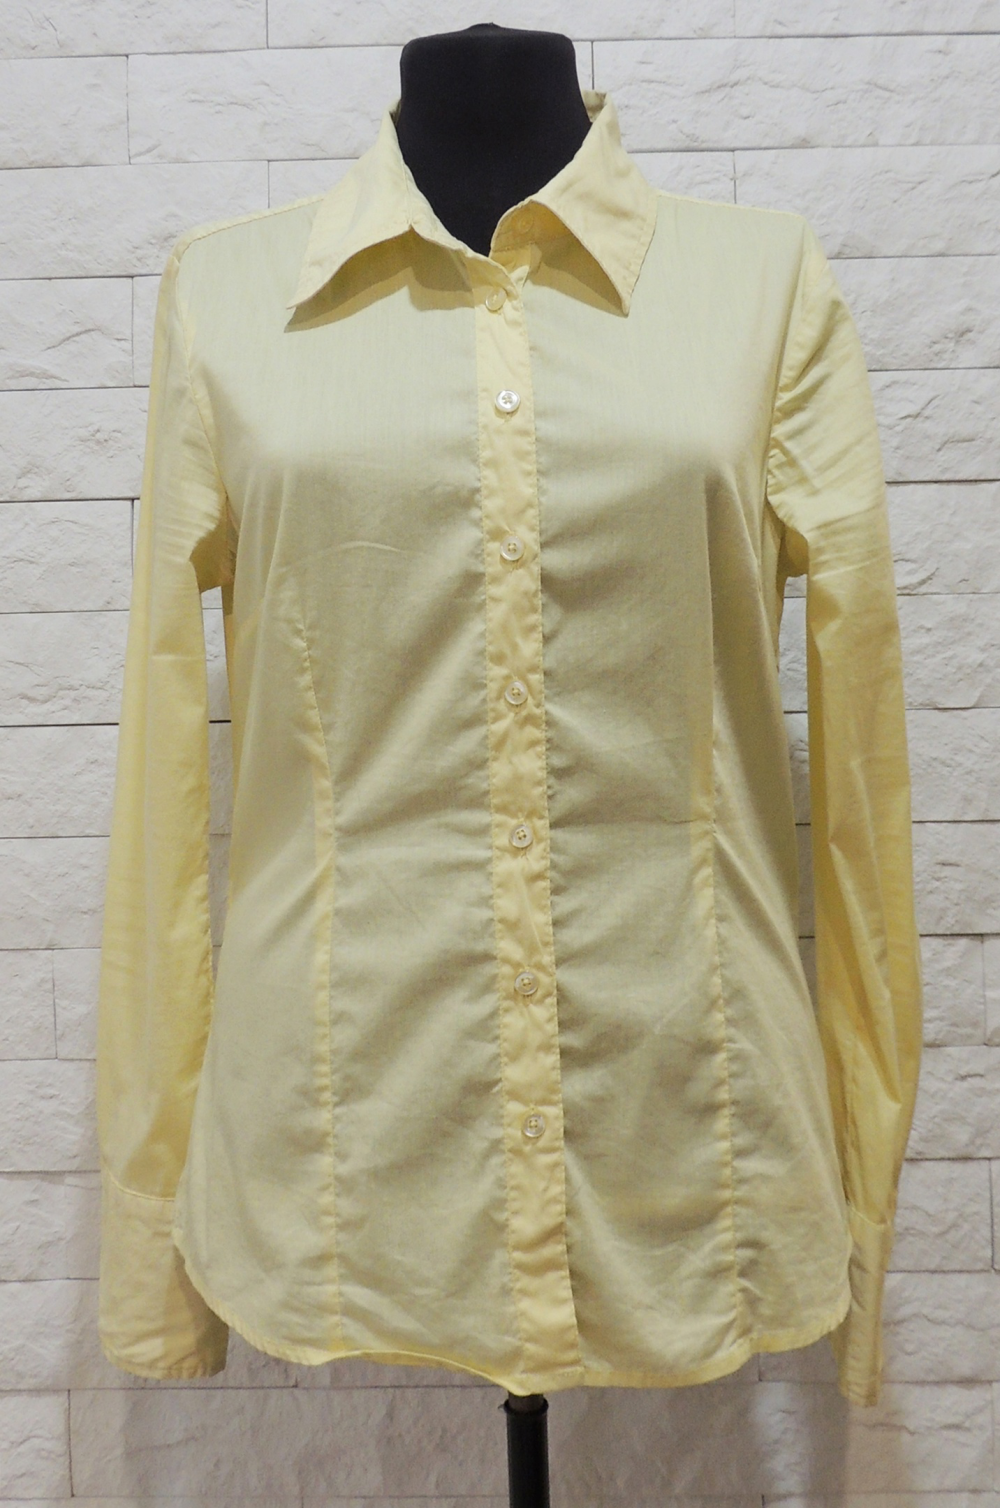 Рубашка Vero moda. 46 размер